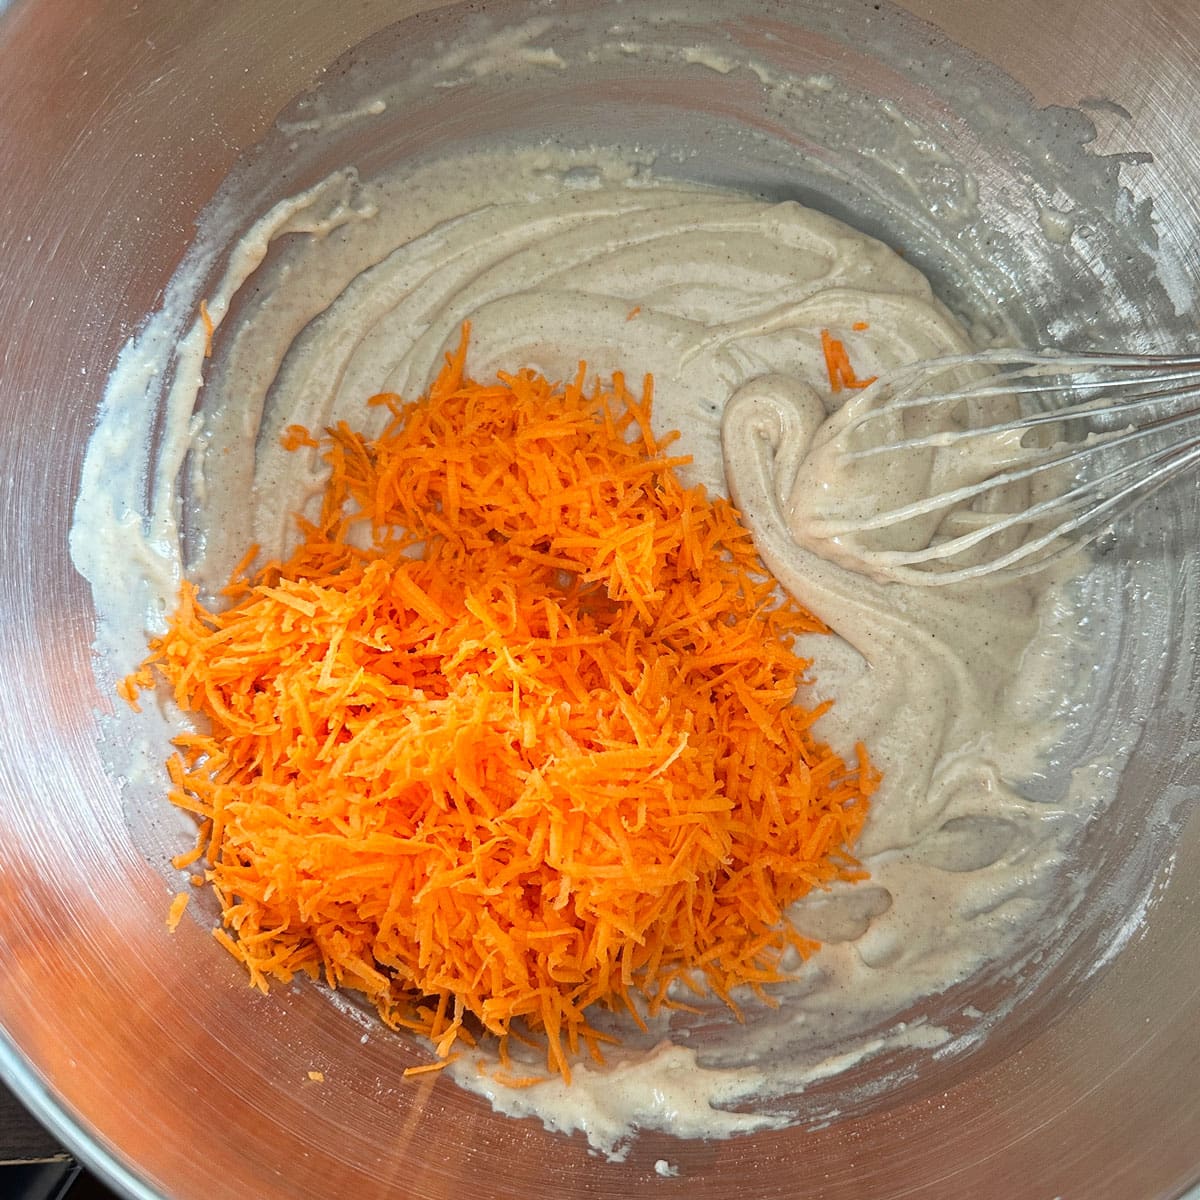 Carrot cupcake ingredients in mixing bowl.